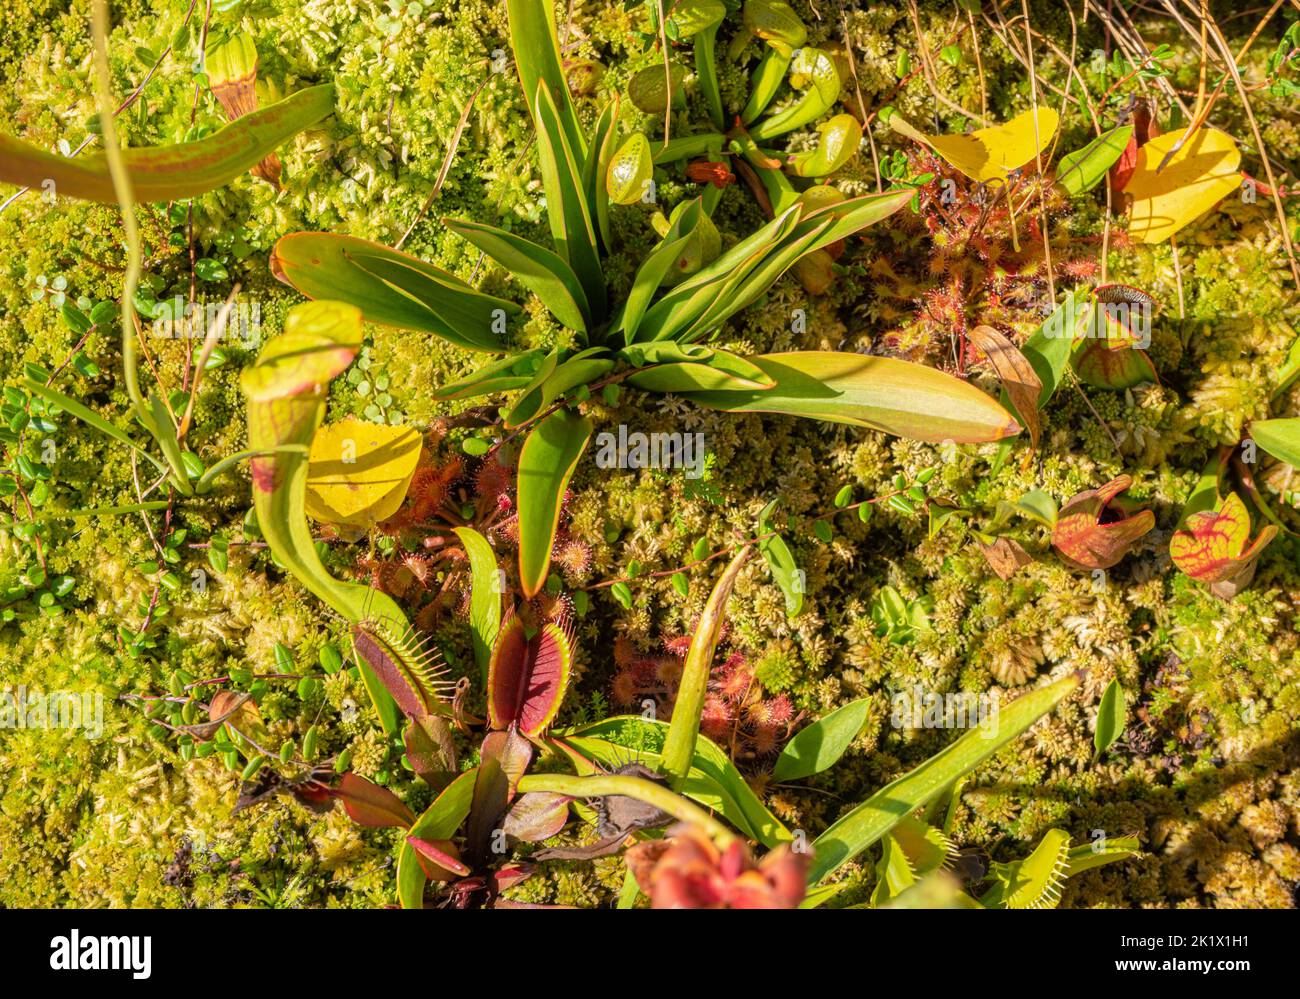 varie piante carnivore in un ambiente umido e soleggiato visto dall'alto Foto Stock